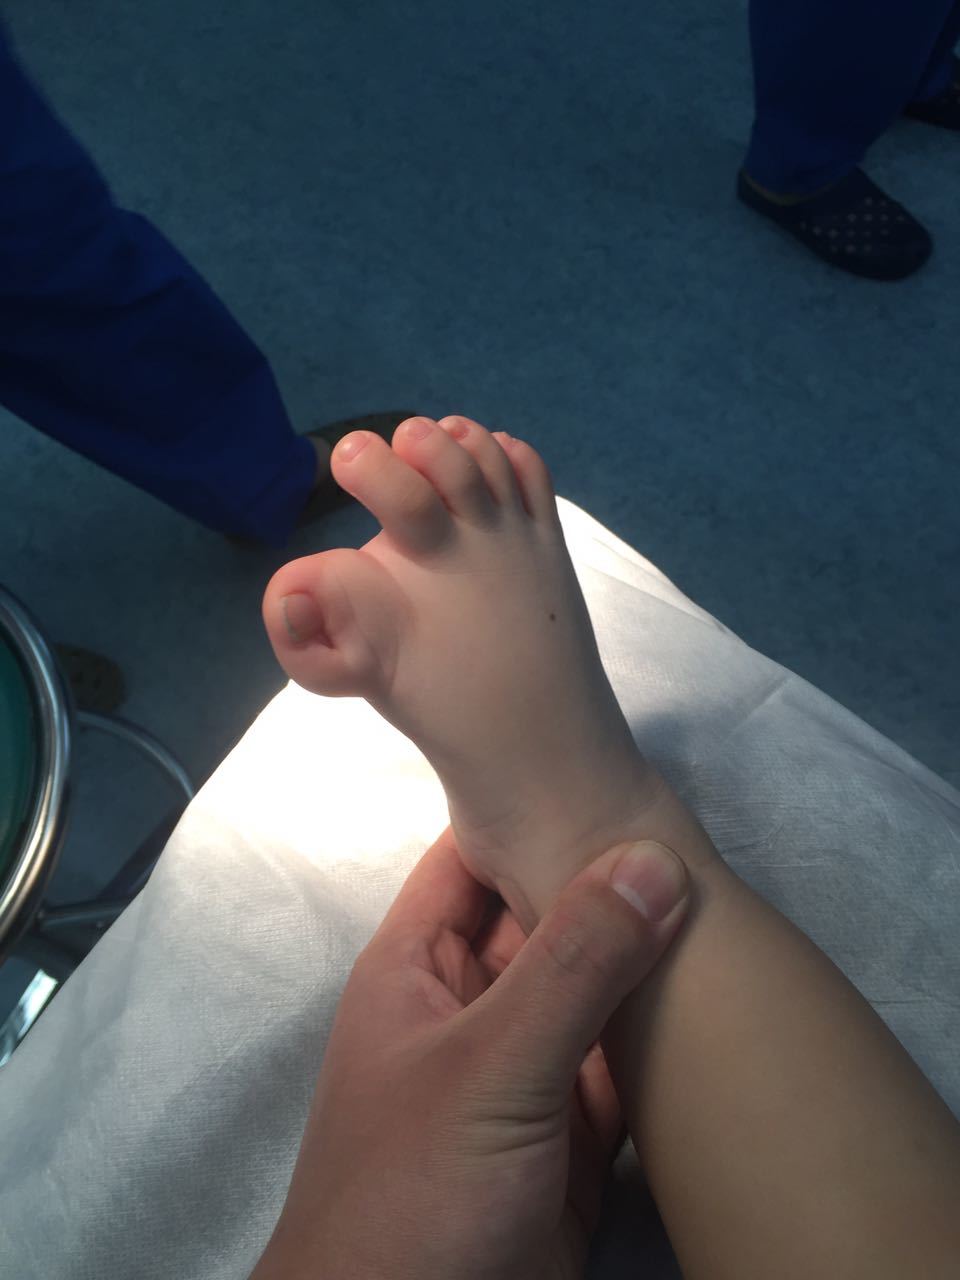 足拇指内翻畸形,一次手术矫正 (原创)